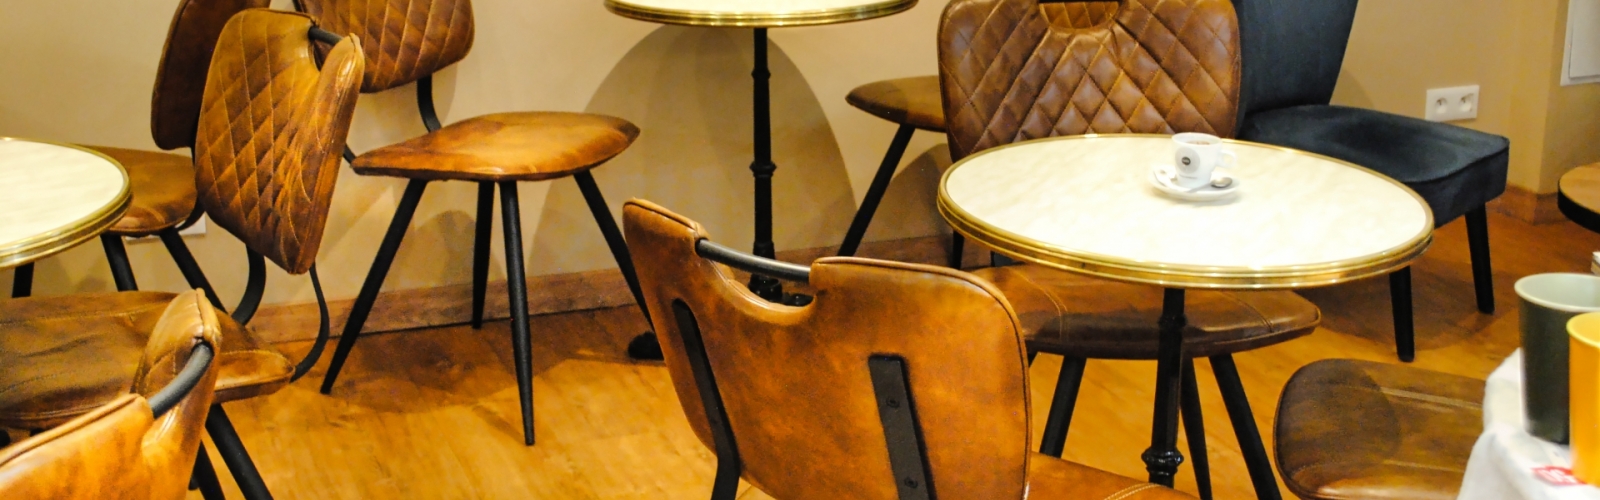 Le palais du caf - mobilier professionnel - mobilier coulomb - CHR